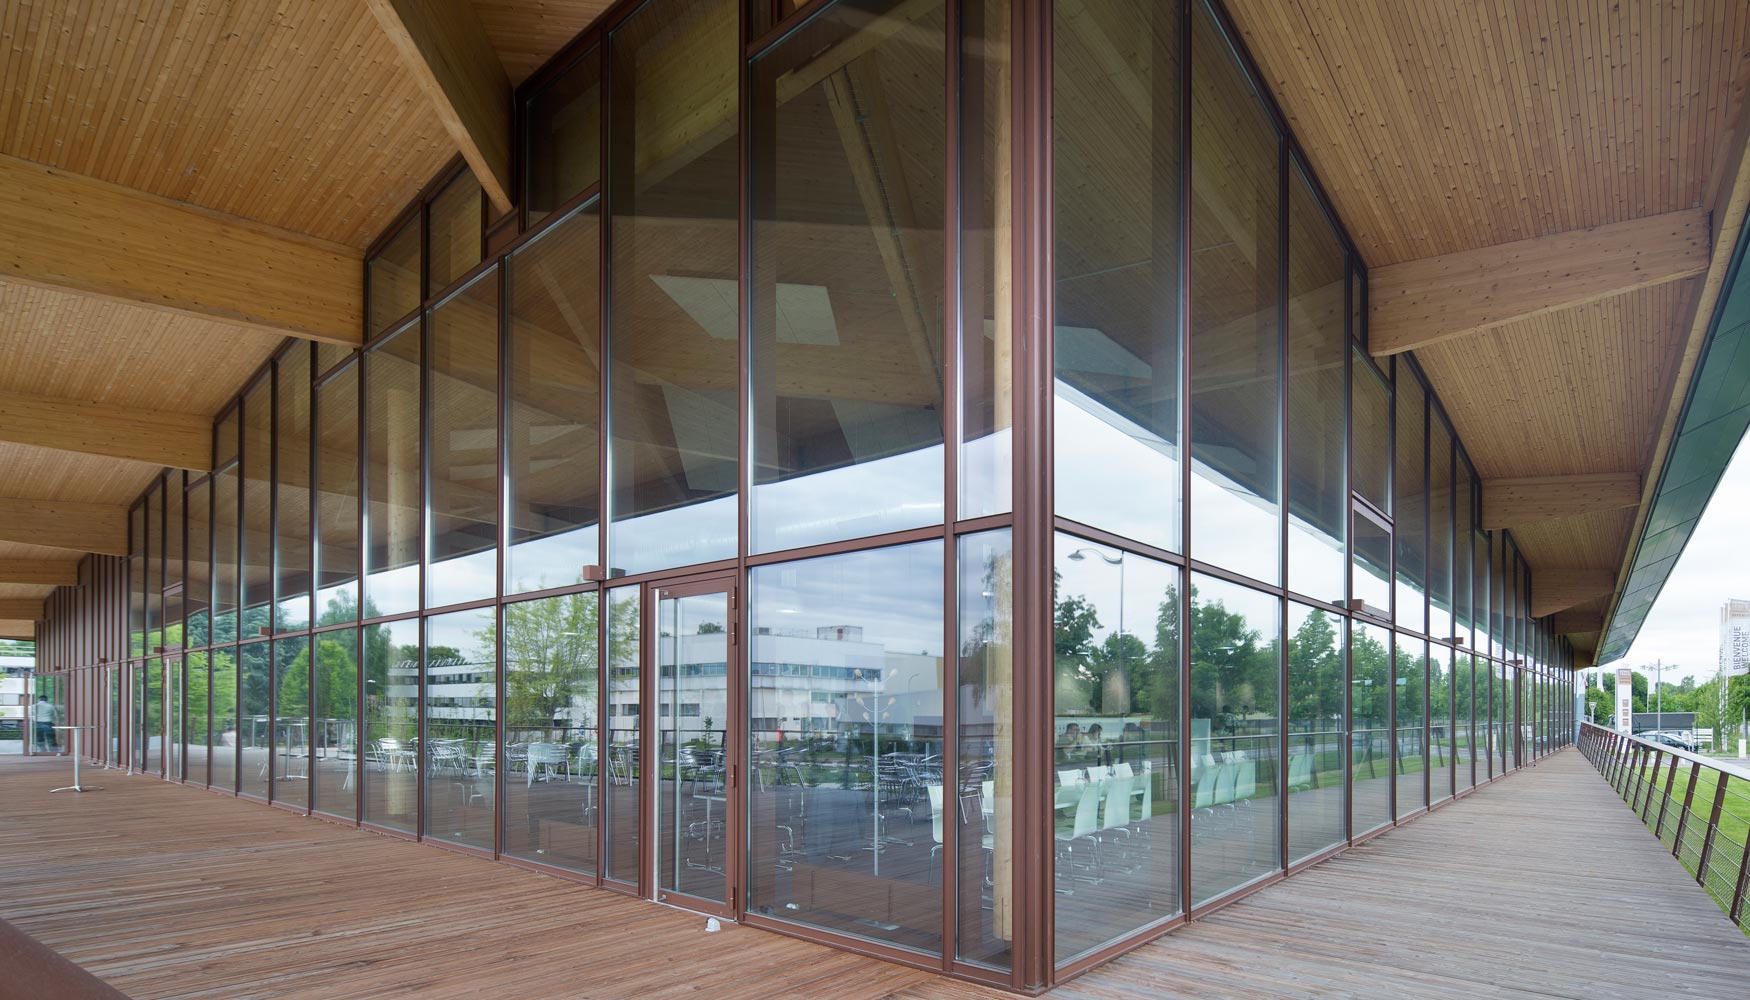 Aluminio, vidrio y madera son los materiales bsicos en el edificio. Los primeros aportan fortaleza. El tercero, calidez y naturalidad...